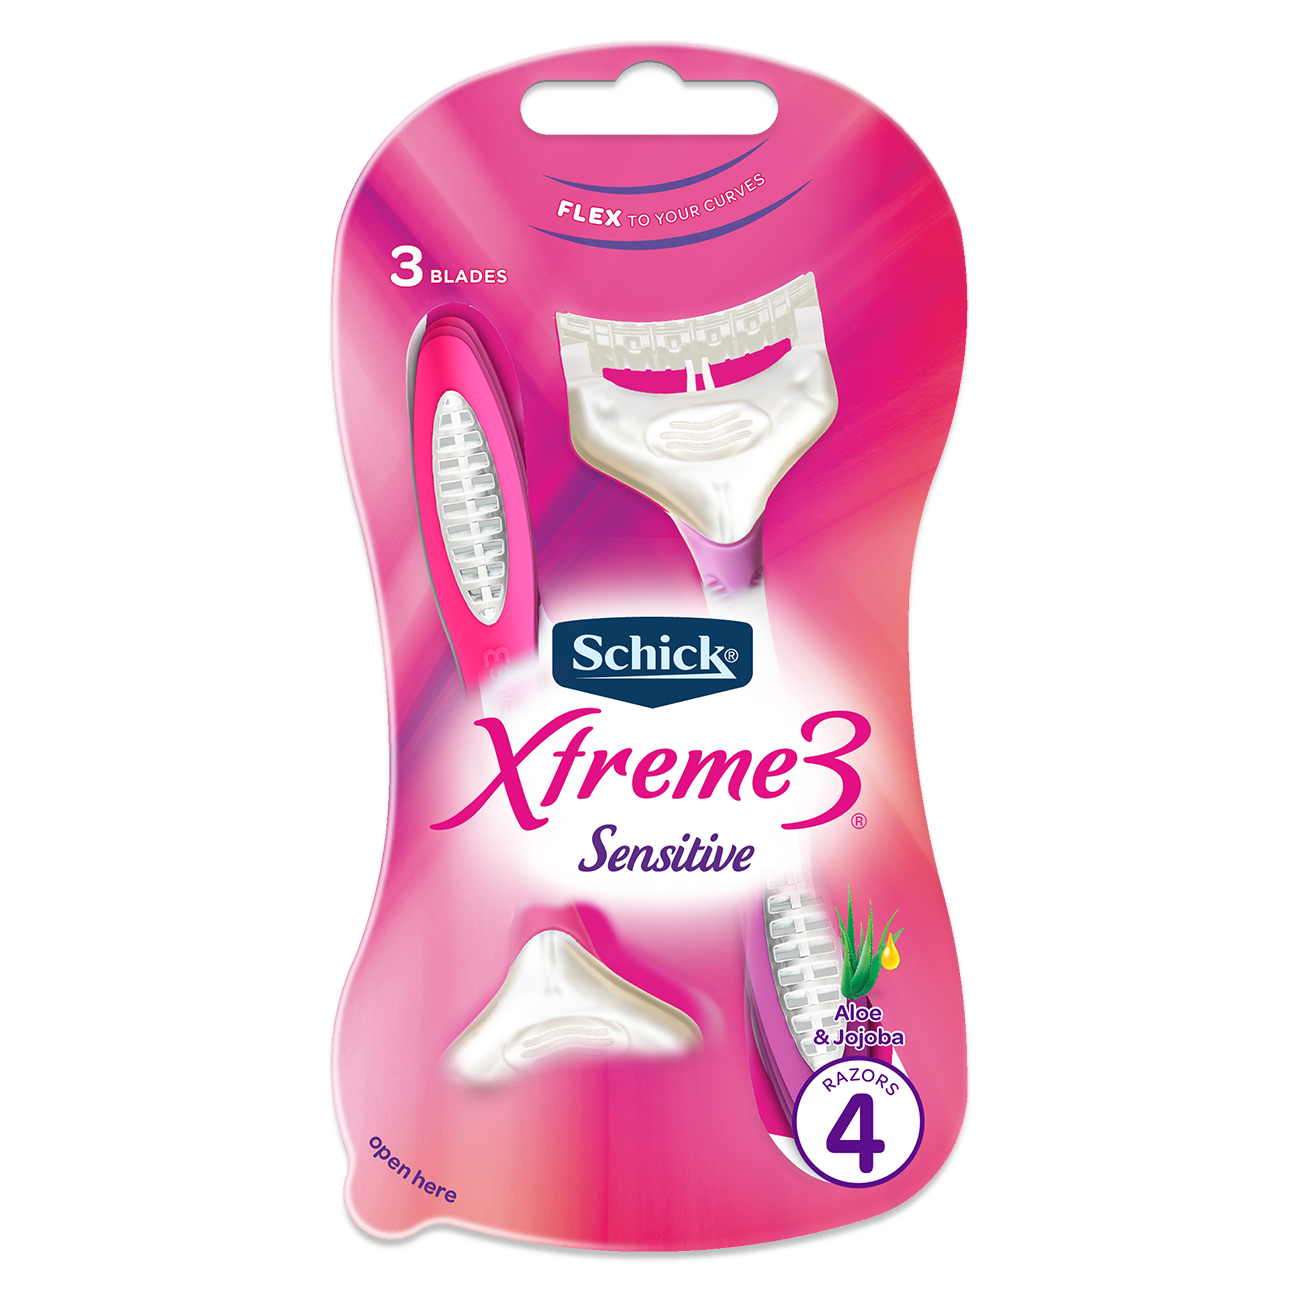 Xtreme 3 Sensitive Disposables for Women